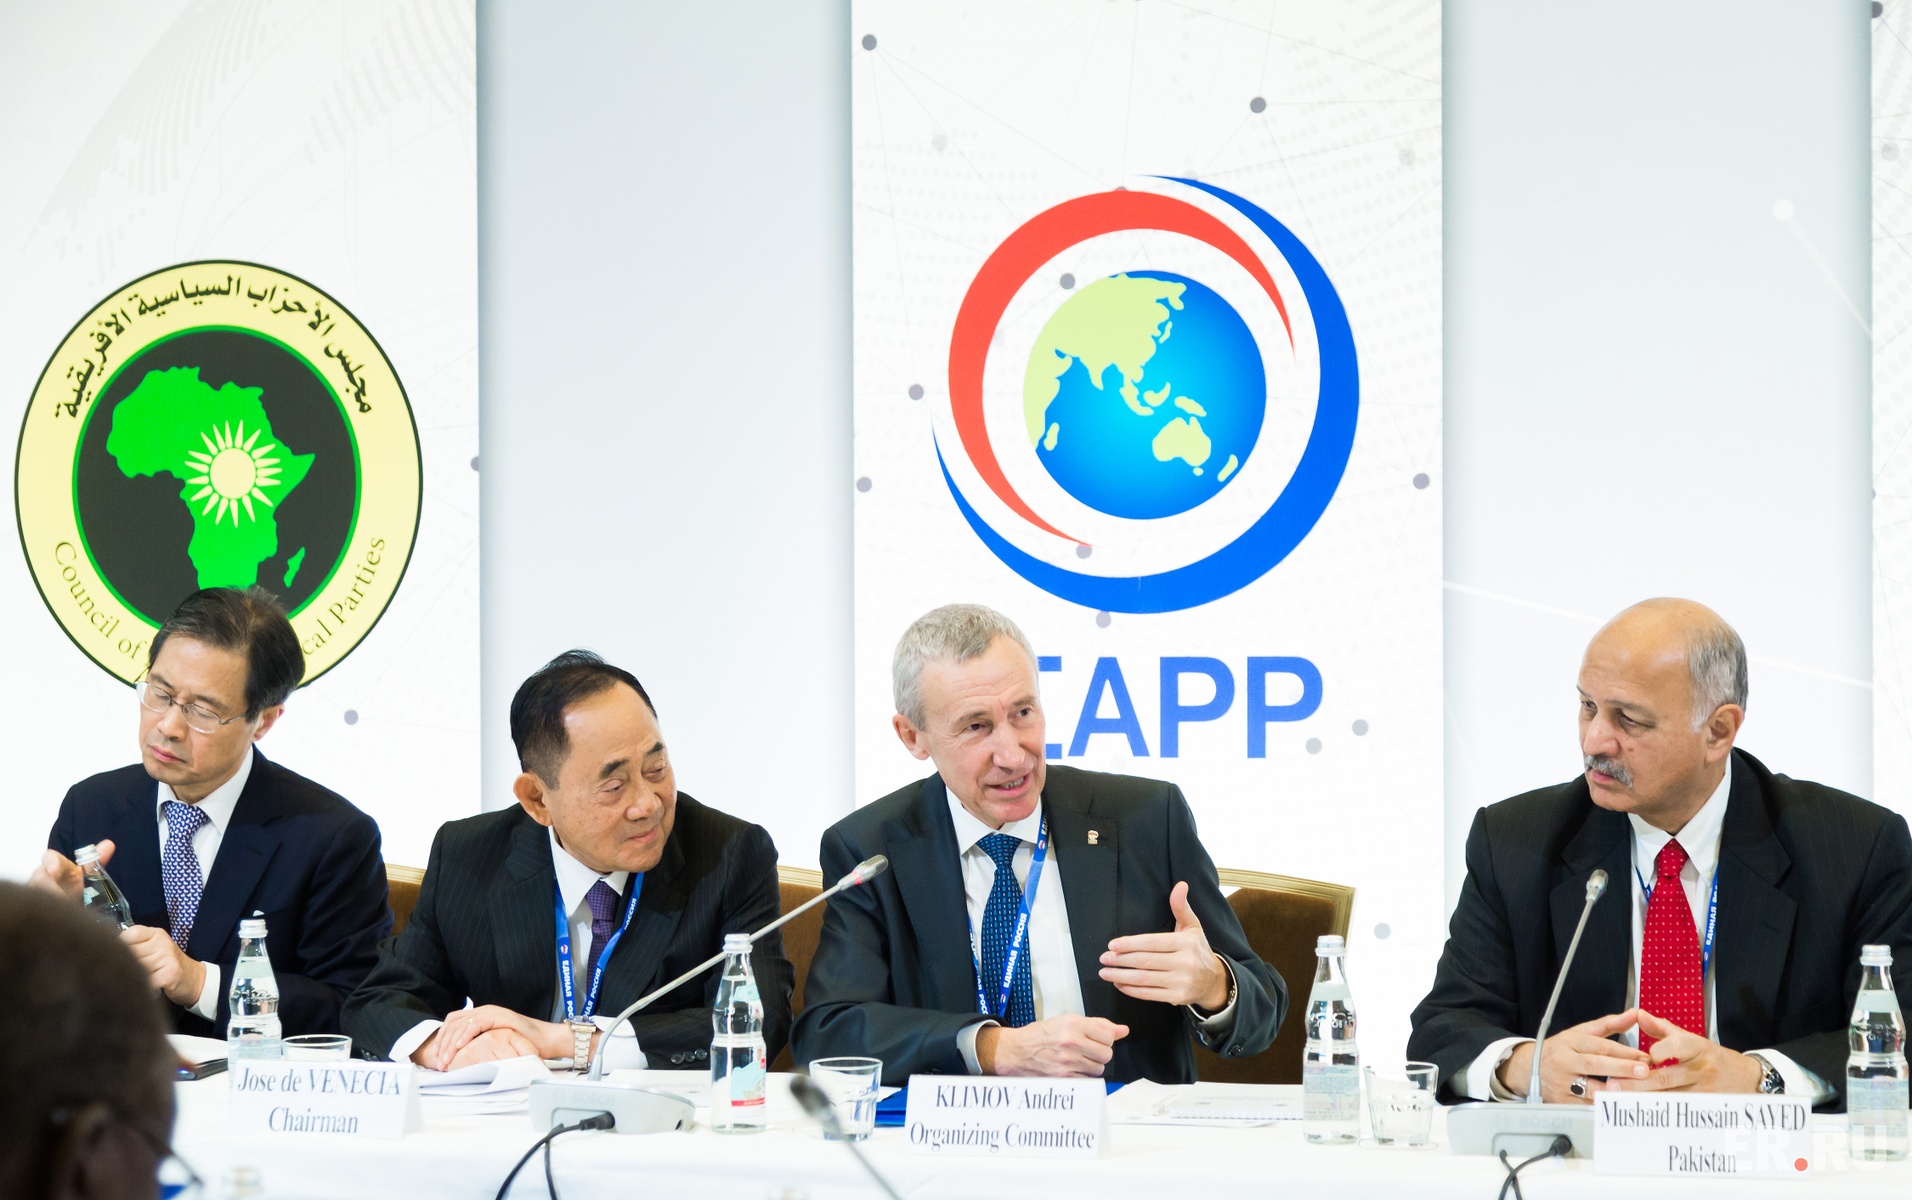  Заседание Координационного комитета по трехстороннему сотрудничеству между МКАПП, COPPPAL и СAPP